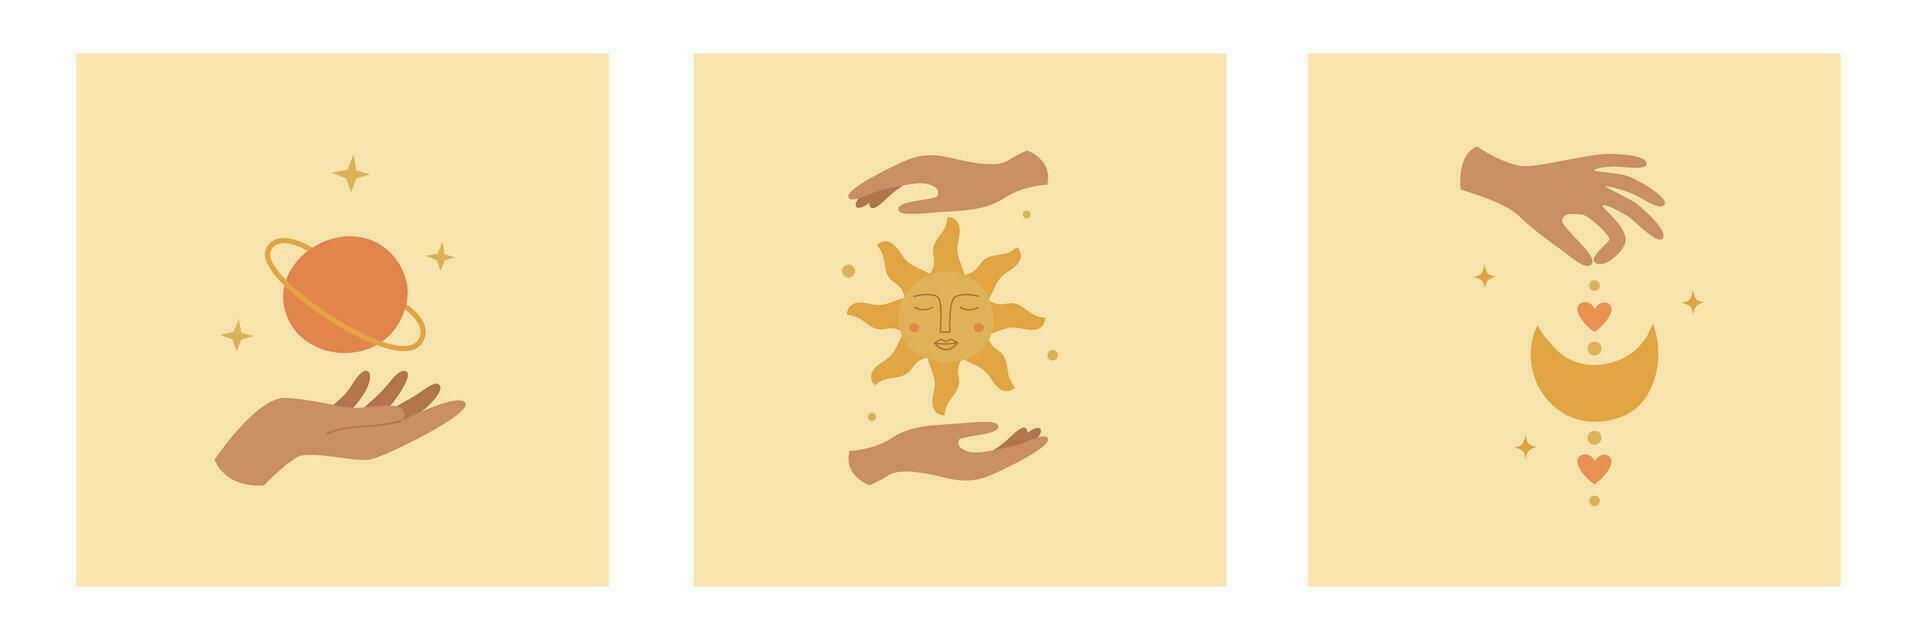 ensemble de mystique logos avec femme mains, soleil, planète et lune. modèle pour boho conception, astrologie, horoscope vecteur